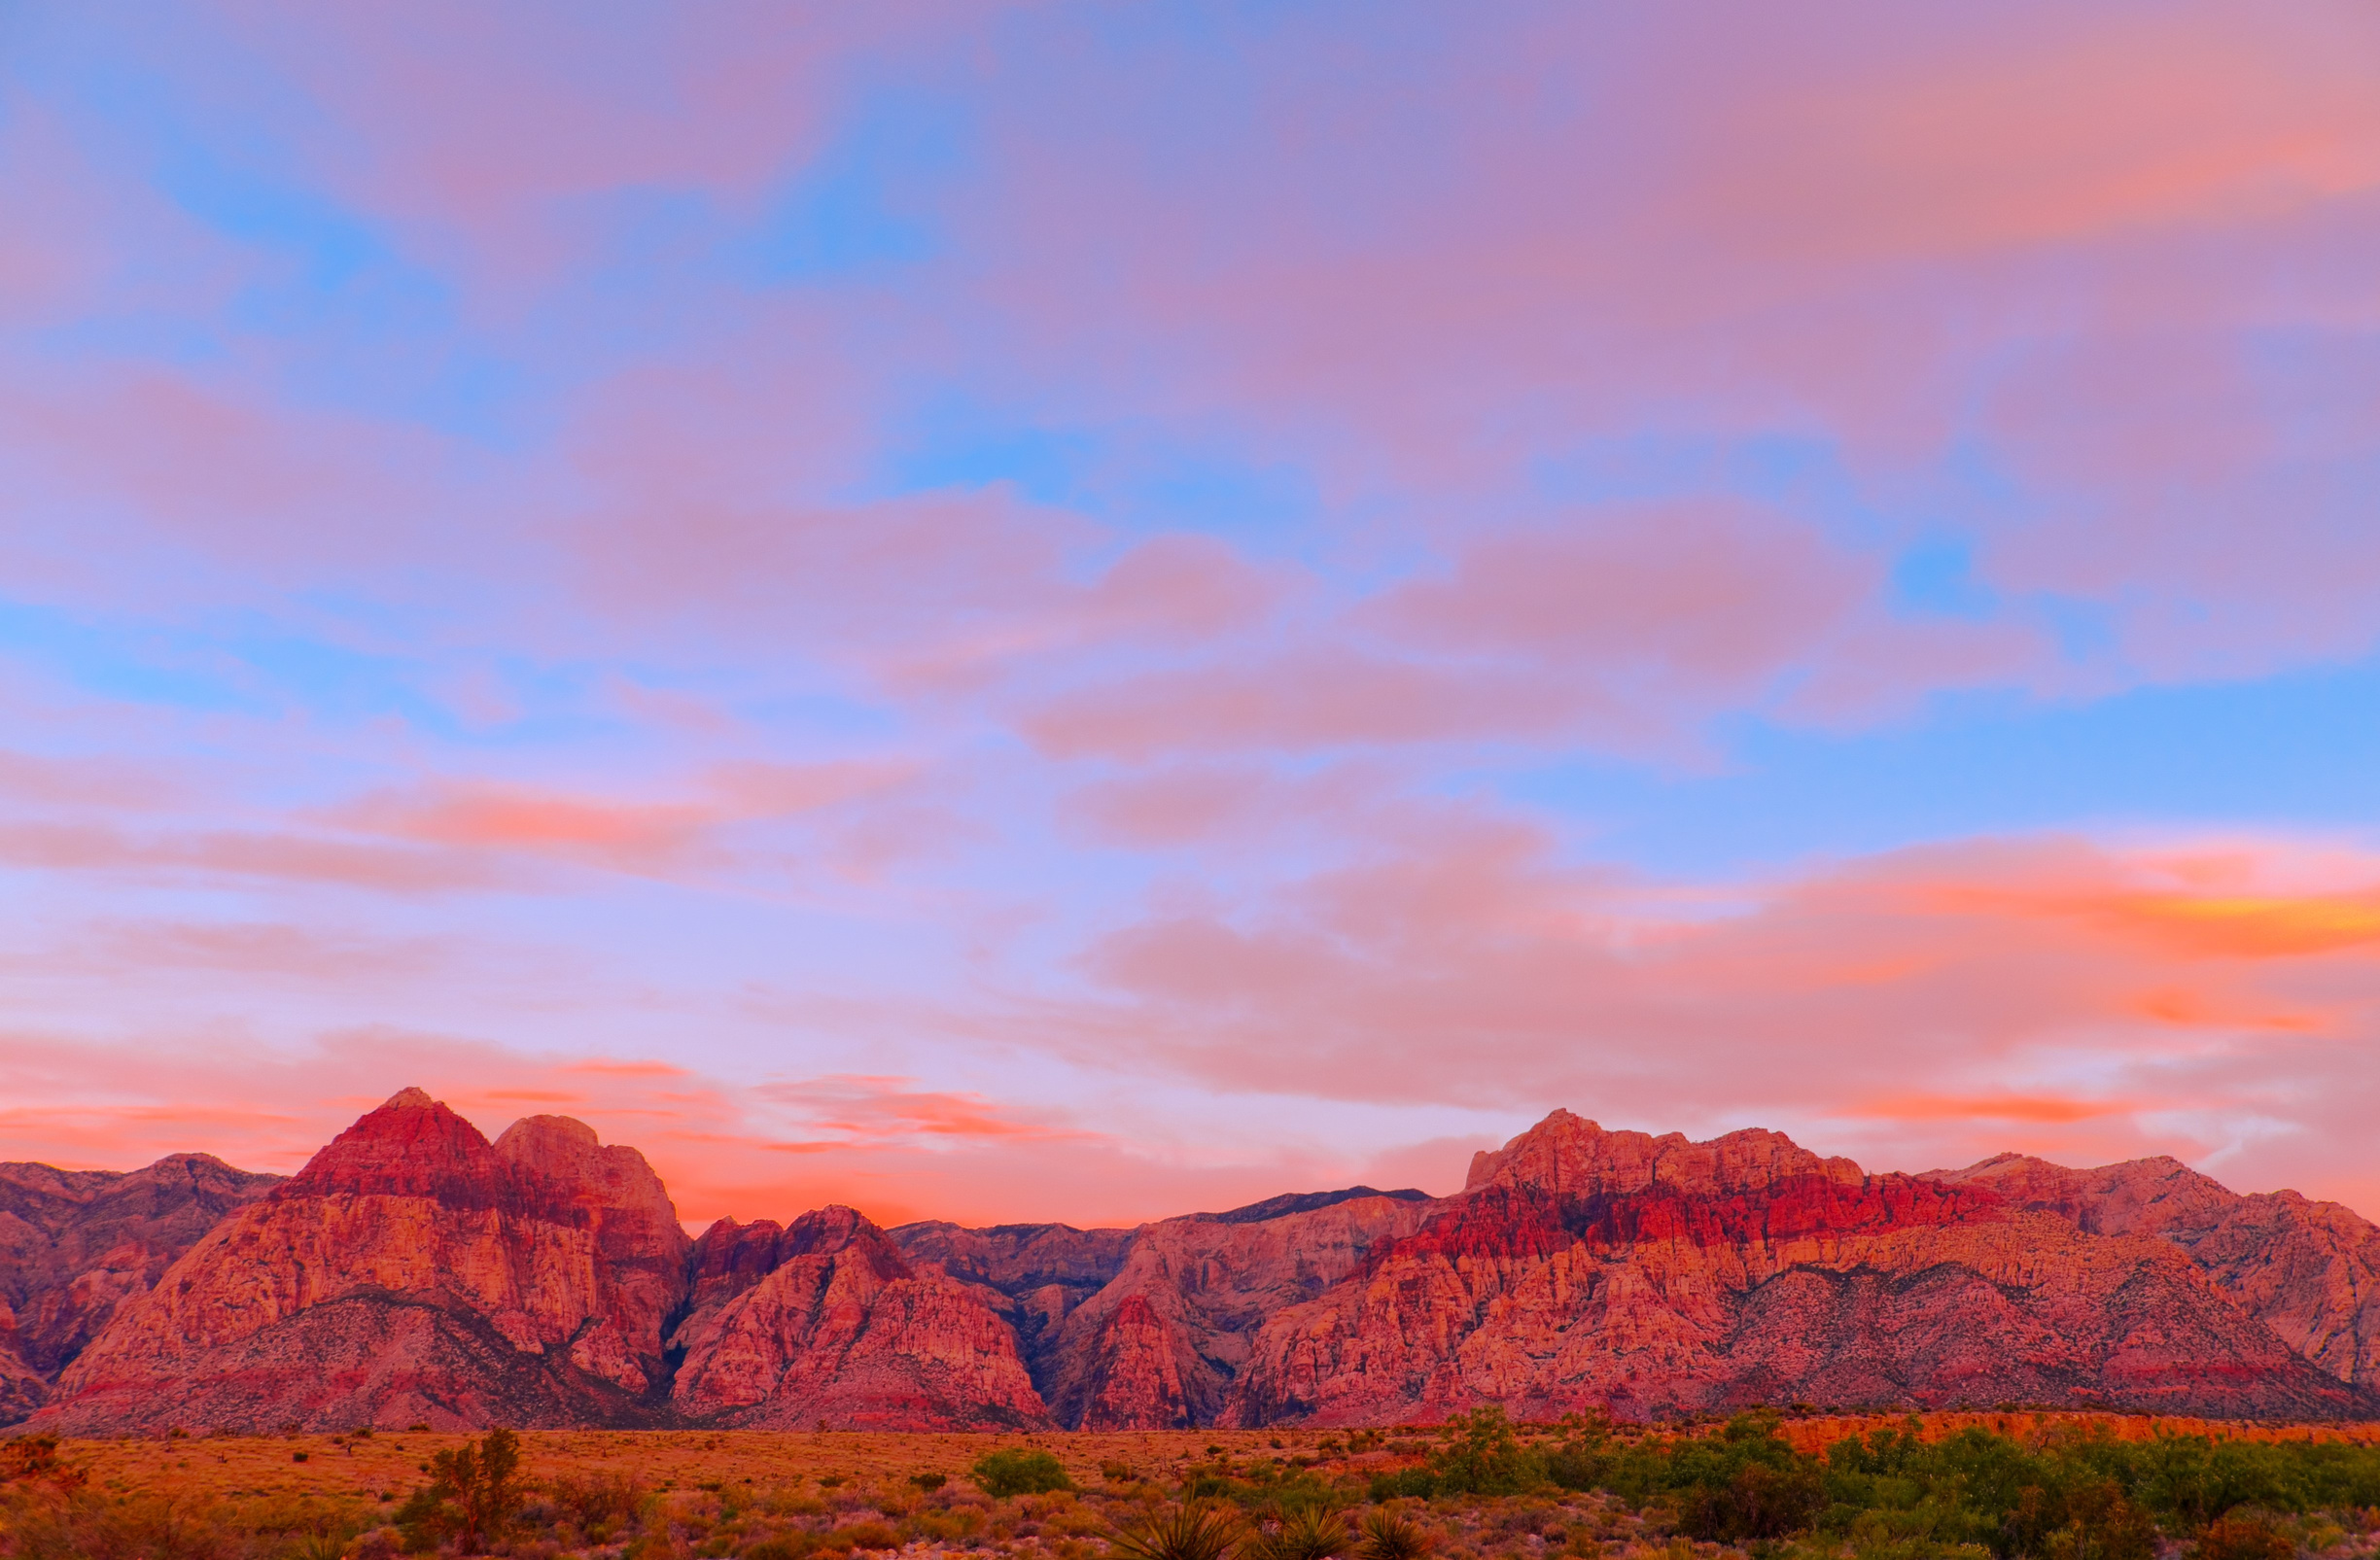 Sunset Red Rock Canyon in Las Vegas, USA